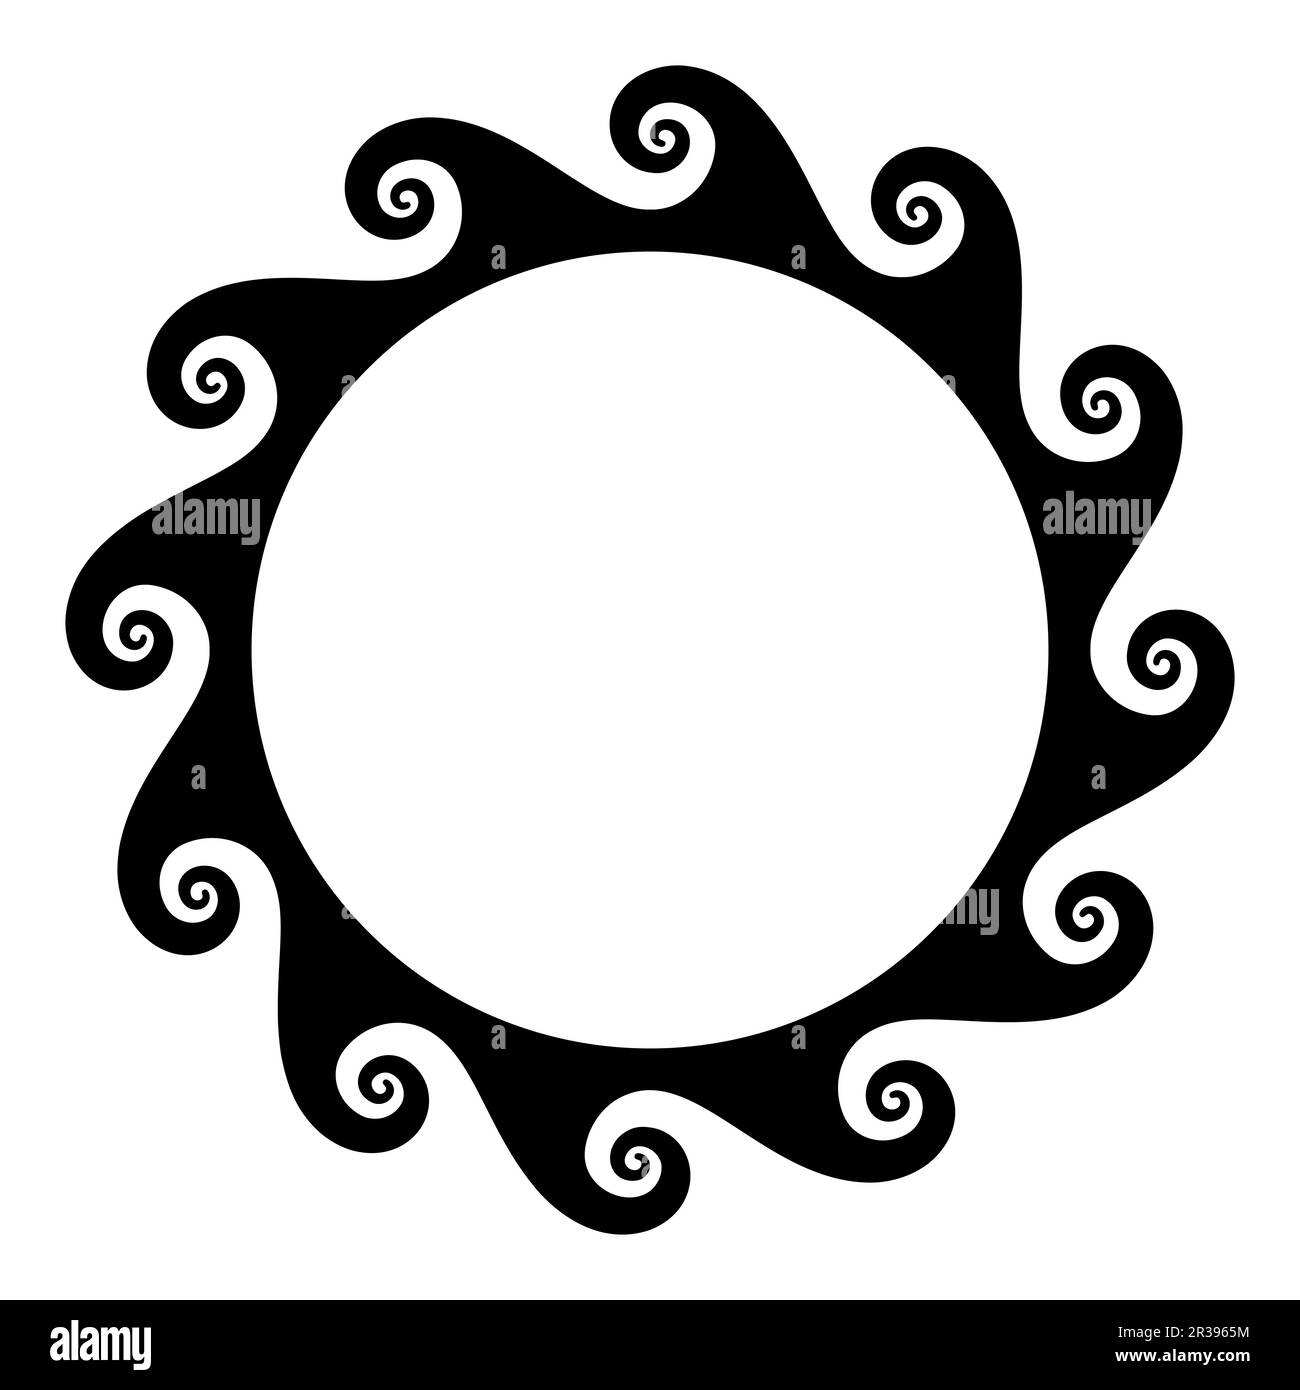 Vitruvianisches Wellenmuster, Kreisrahmen mit nahtlosem Meander-Design, auch bekannt als laufender Hund oder Scrollmuster, ein wiederholtes Motiv mit zwölf Spiralen. Stockfoto